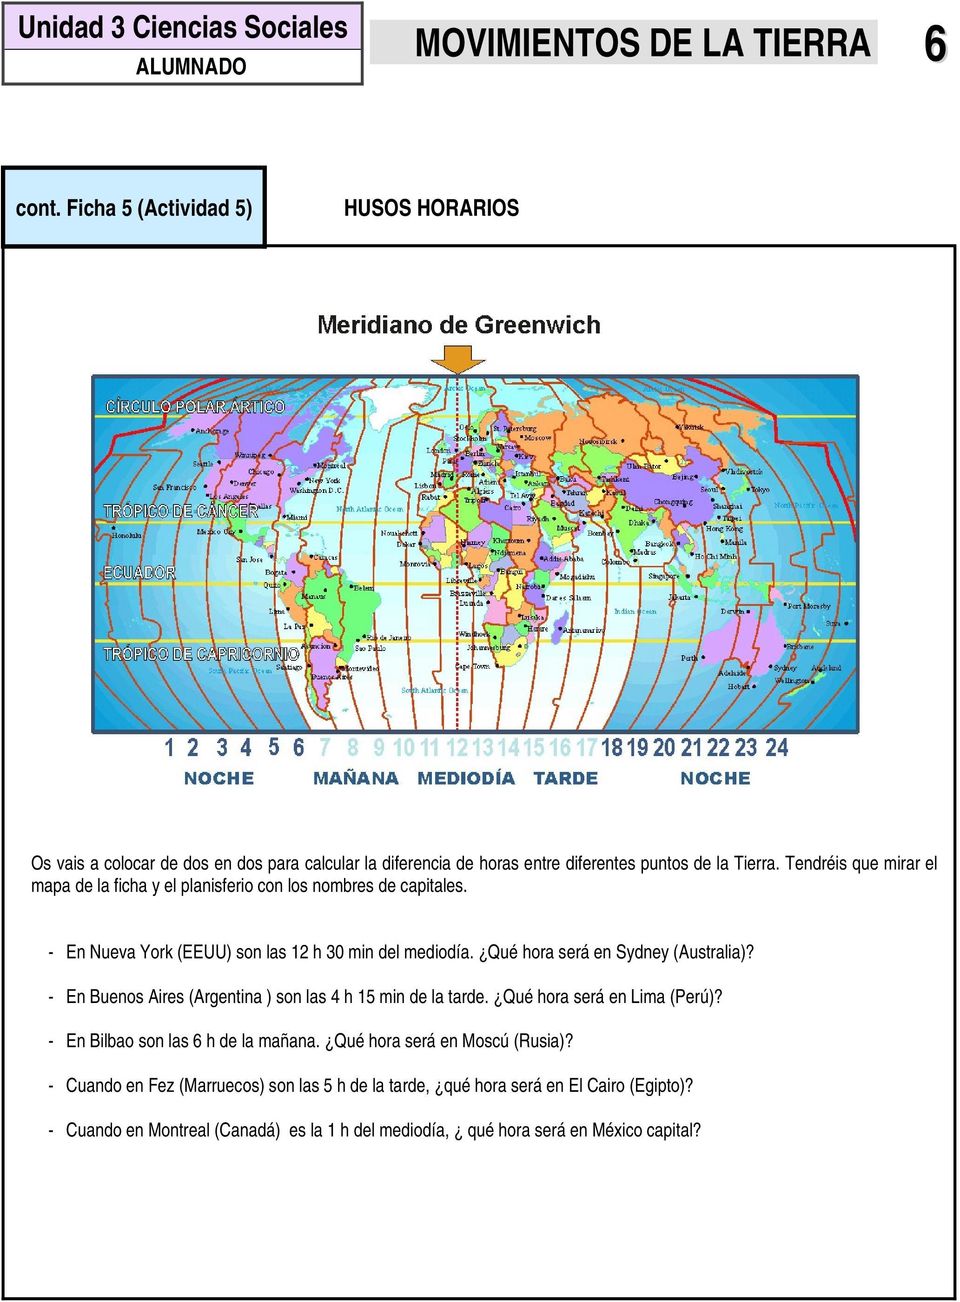 Tendréis que mirar el mapa de la ficha y el planisferio con los nombres de capitales. - En Nueva York (EEUU) son las 12 h 30 min del mediodía. Qué hora será en Sydney (Australia)?